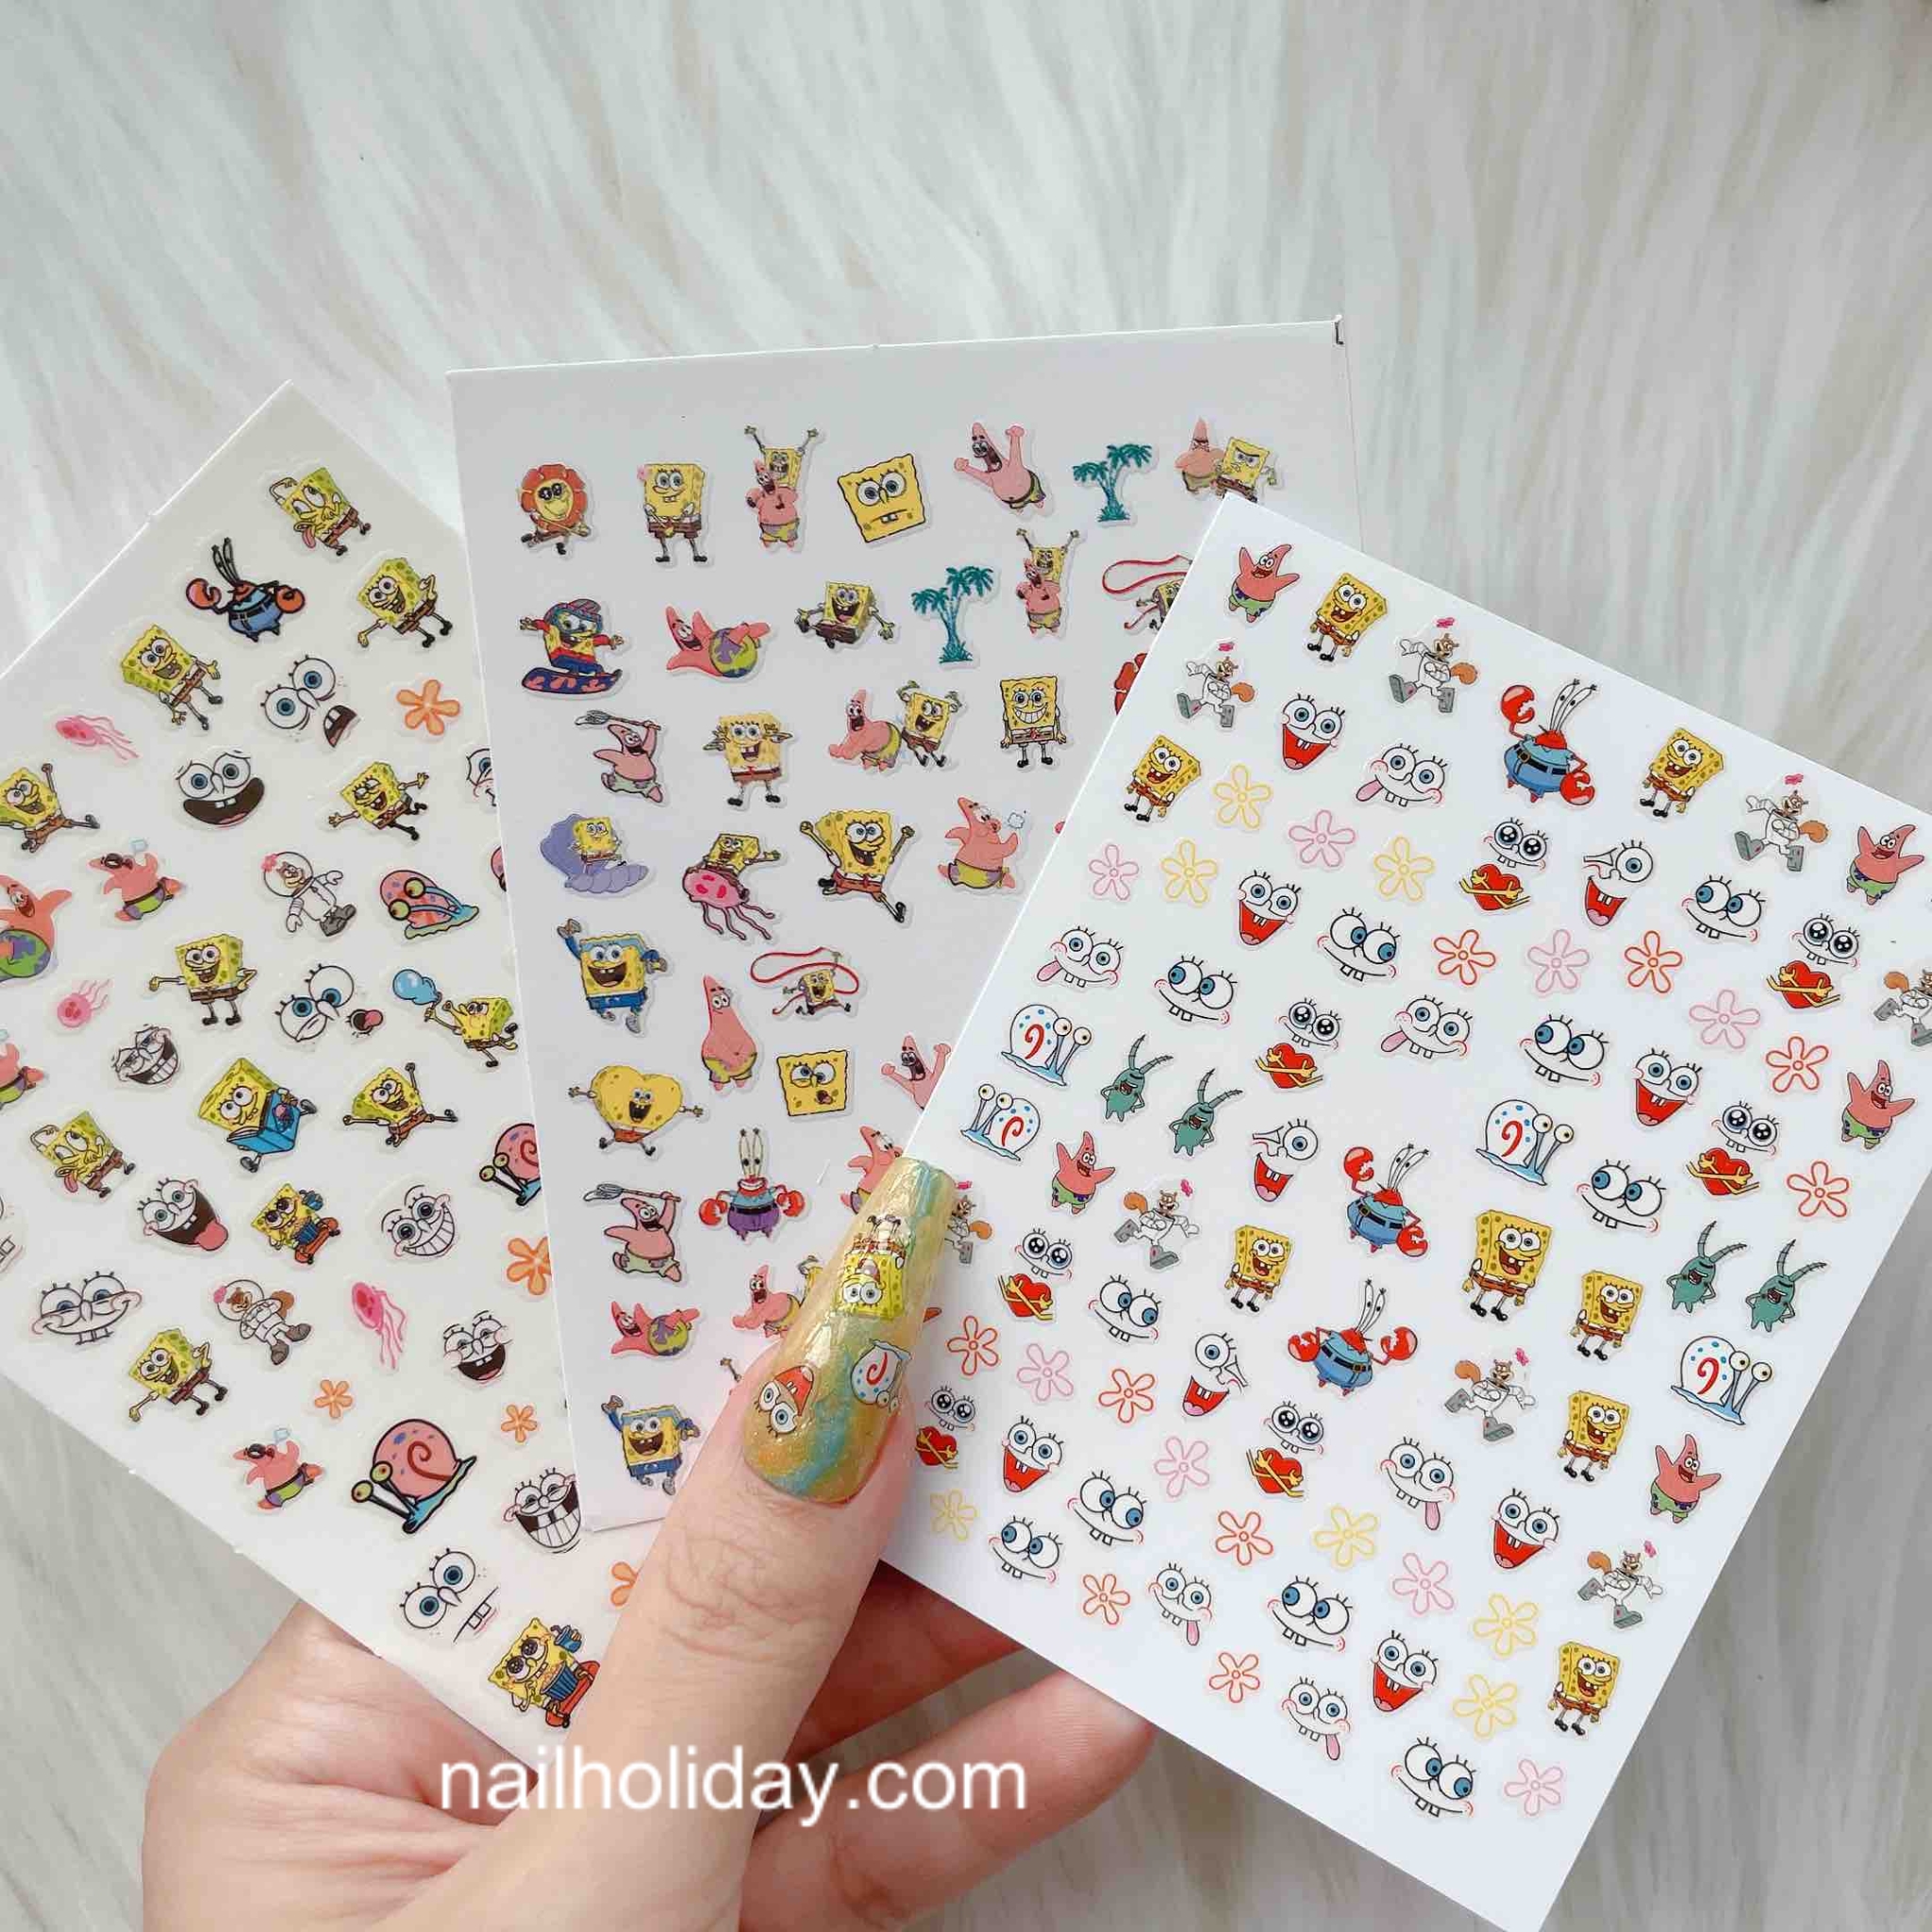 Naruto Nail Stickers Set-3 Sheets